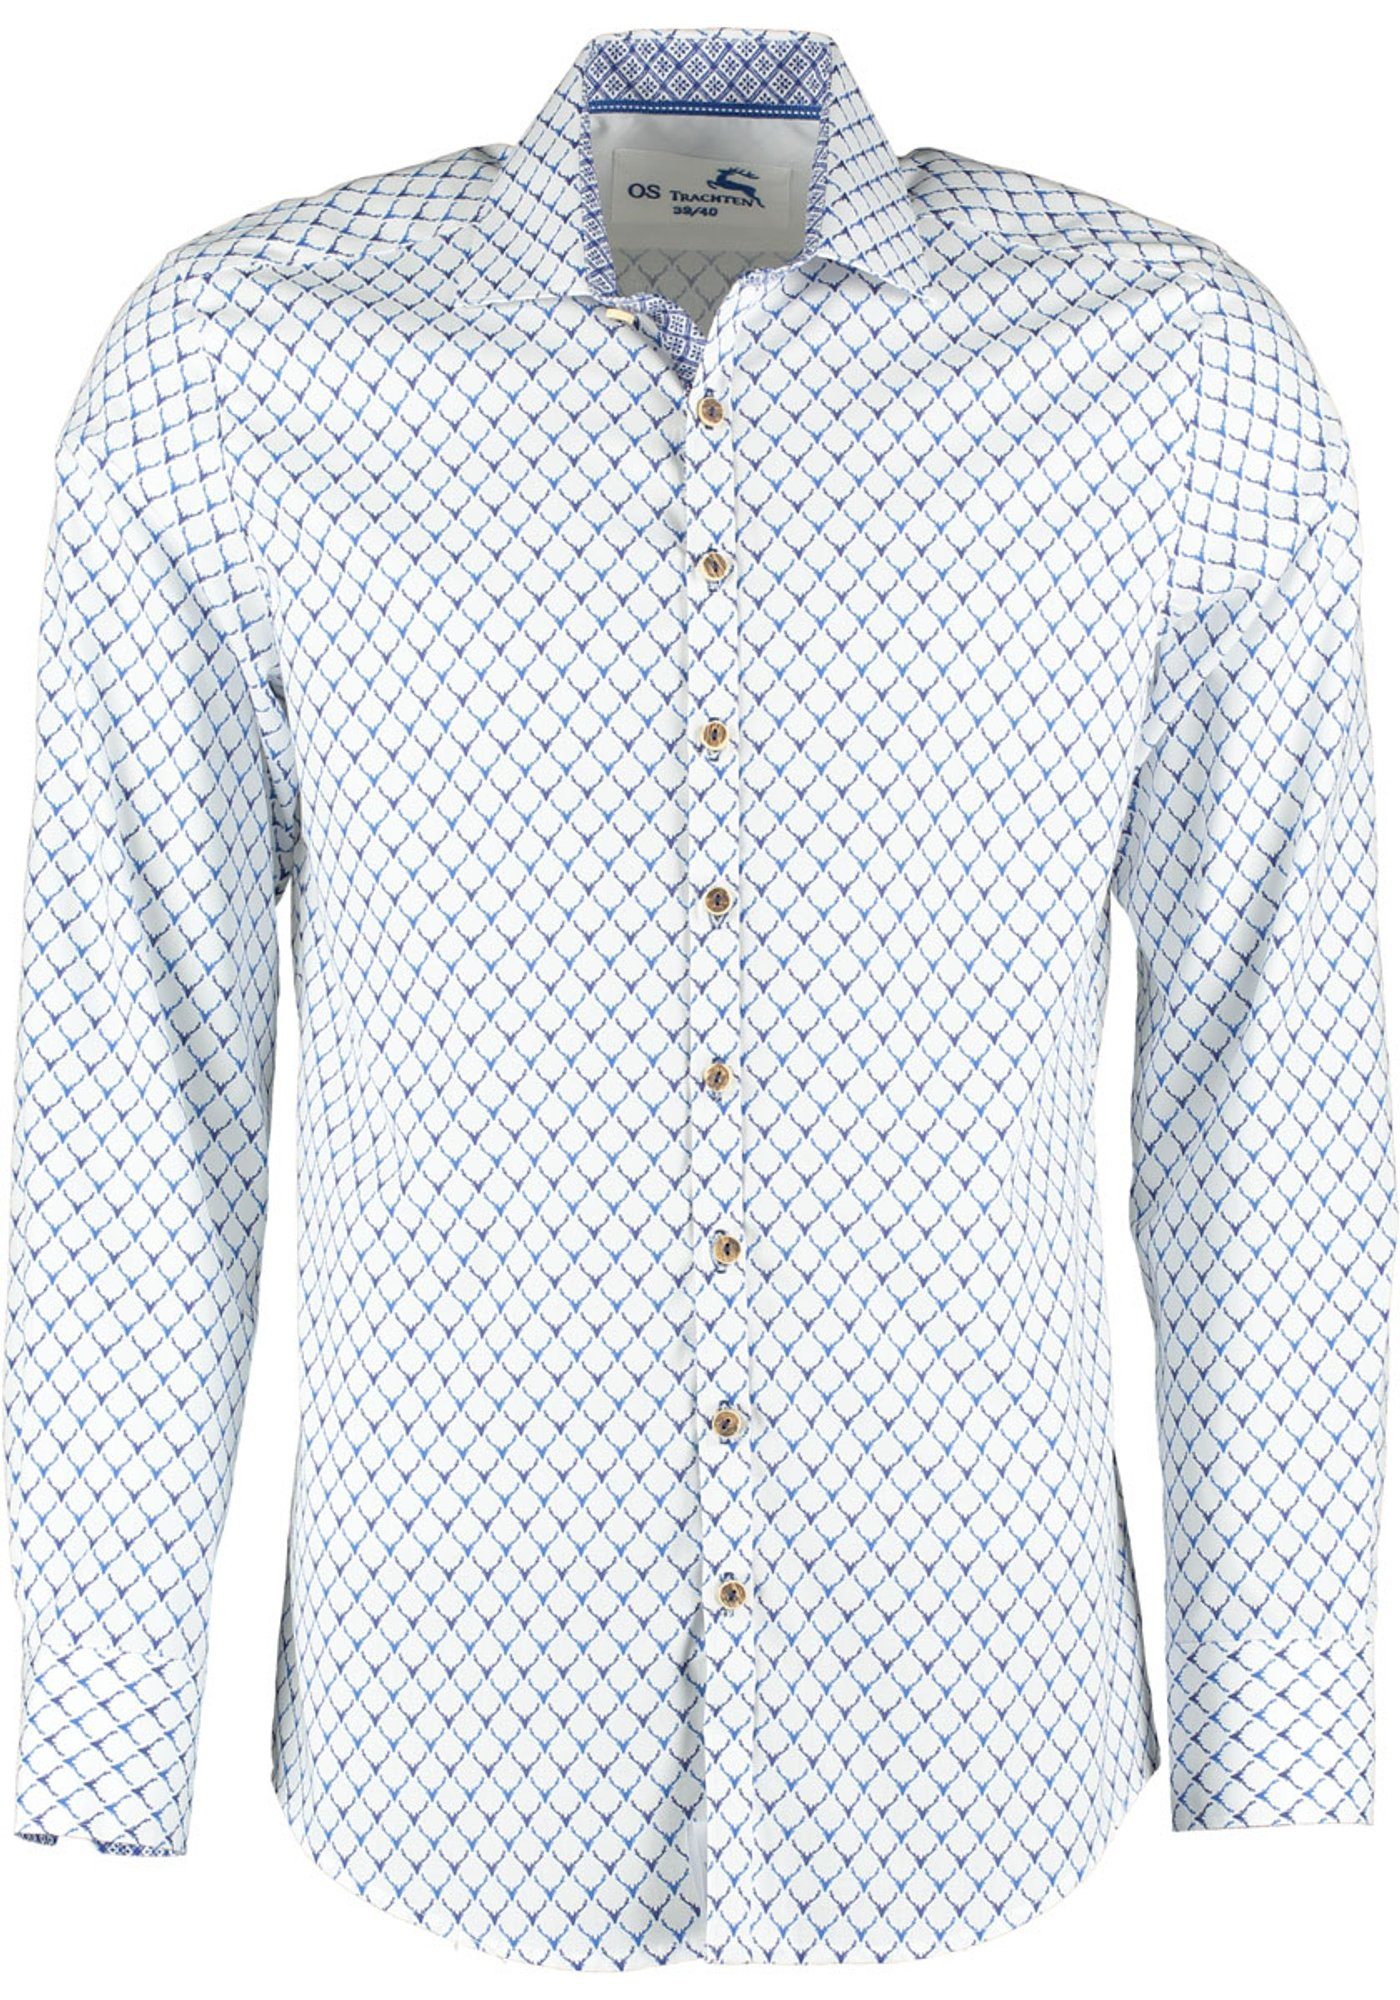 OS-Trachten Trachtenhemd Kedase Langarmhemd mit Allover-Druck jeans